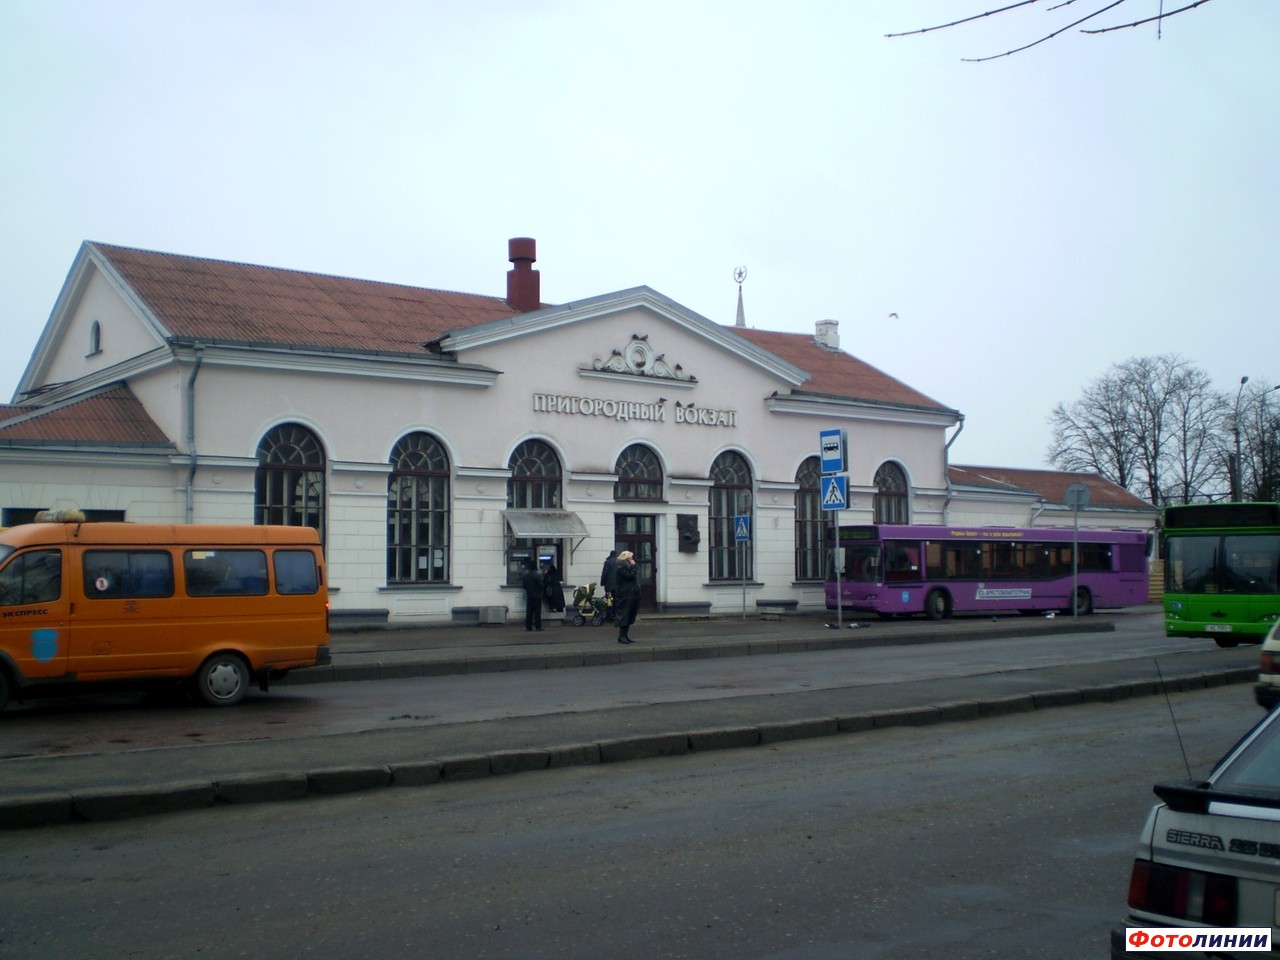 Пригородный вокзал (вид со стороны города)